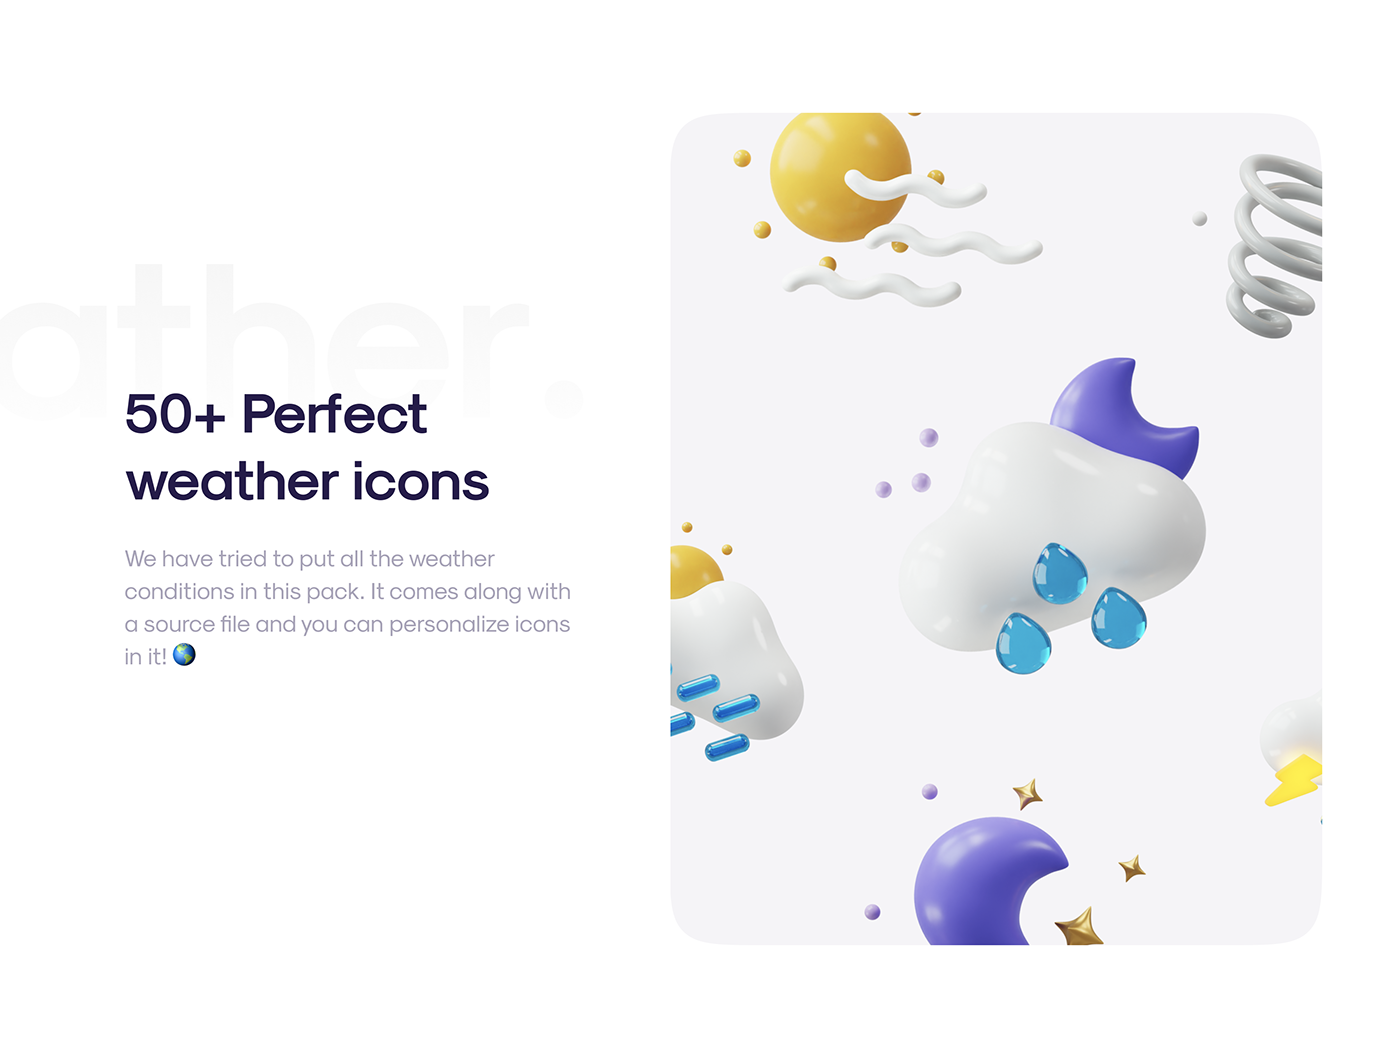 50多个3D高分辨率原始风格和粘土风格完美天气图标包 Weatherly 3D icons – 50+ Weather icons 图标素材 第3张